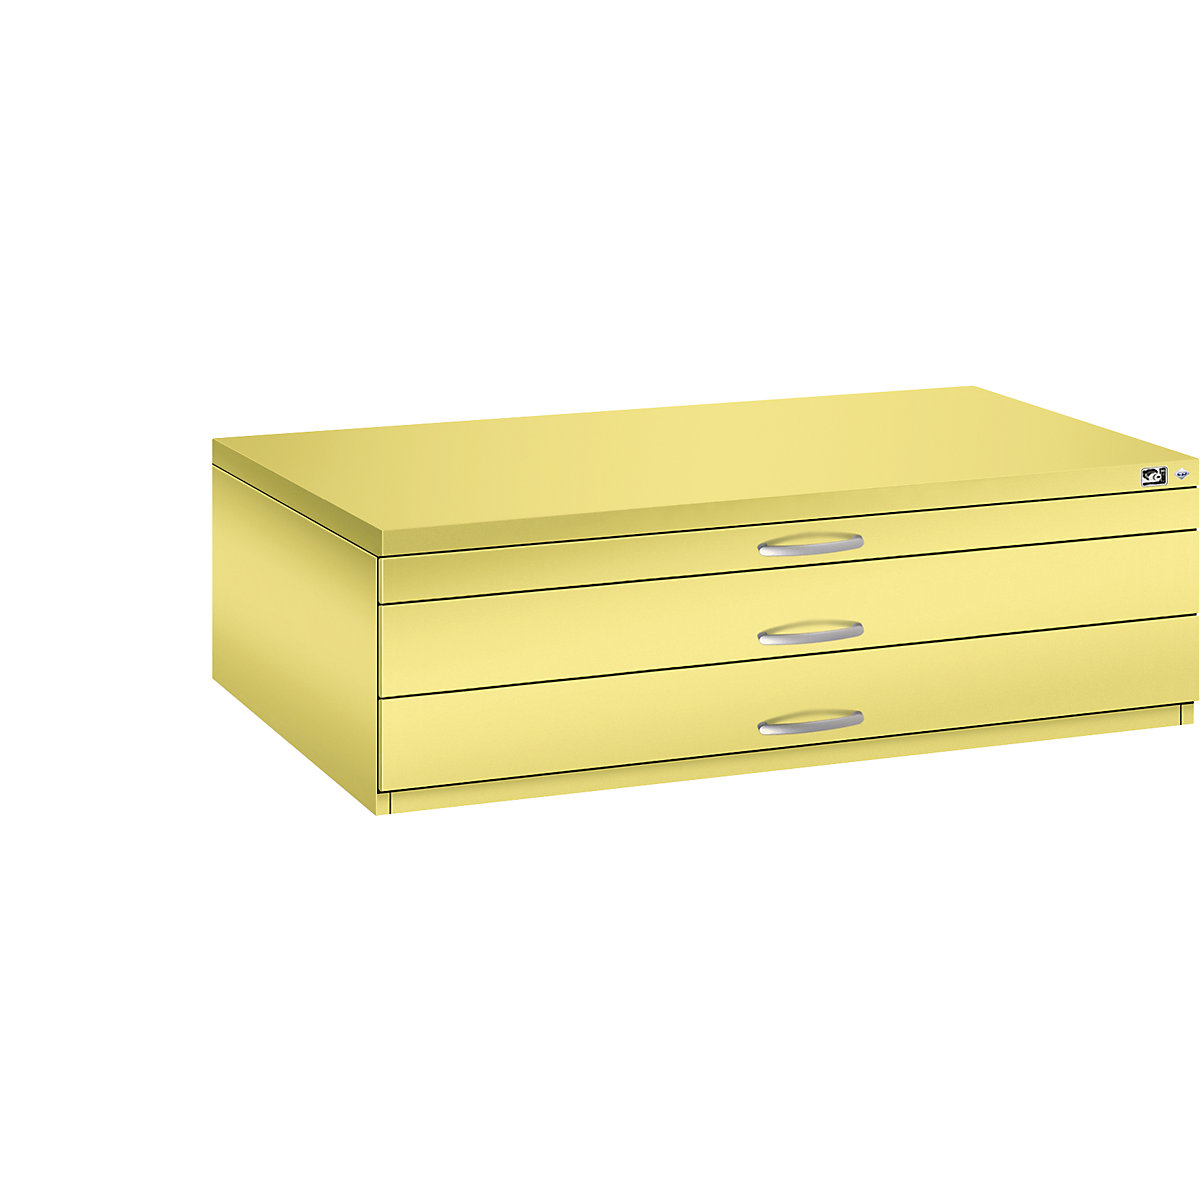 Archivio per disegni – C+P, UNI A0, 3 cassetti, altezza 420 mm, giallo zolfo-20